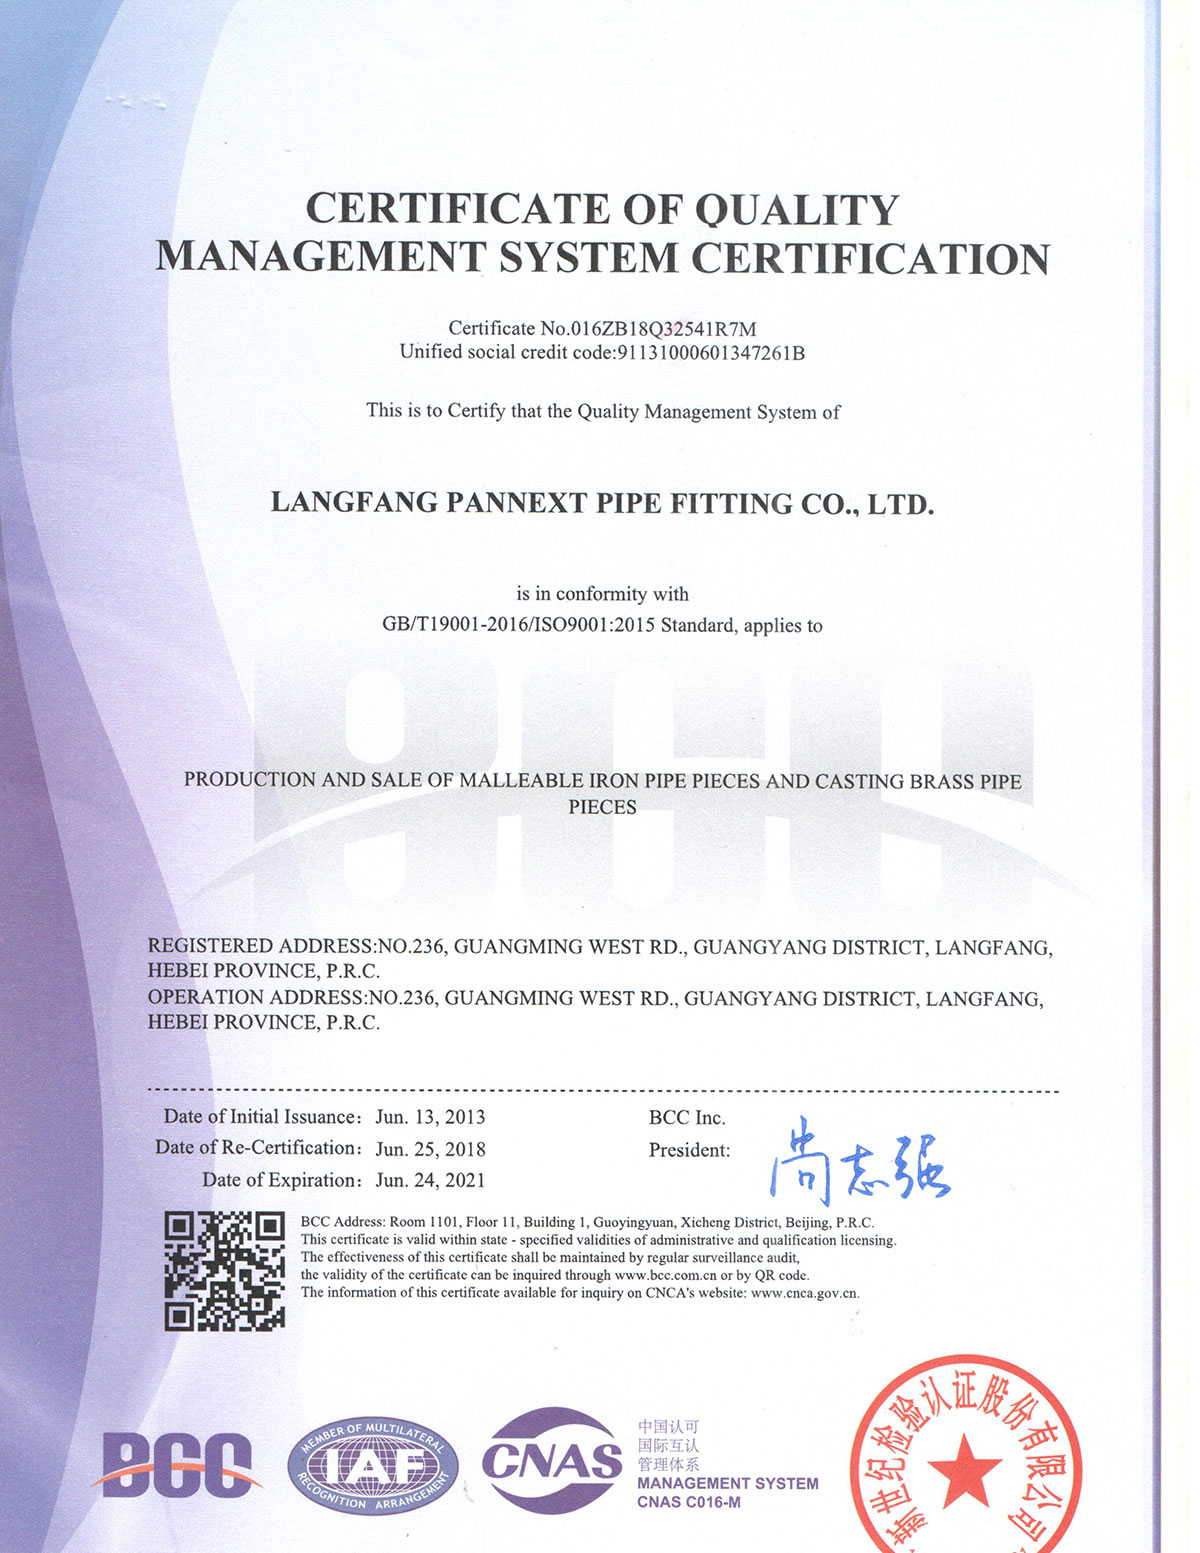 .ISO 9001 KERTIFIKAT1